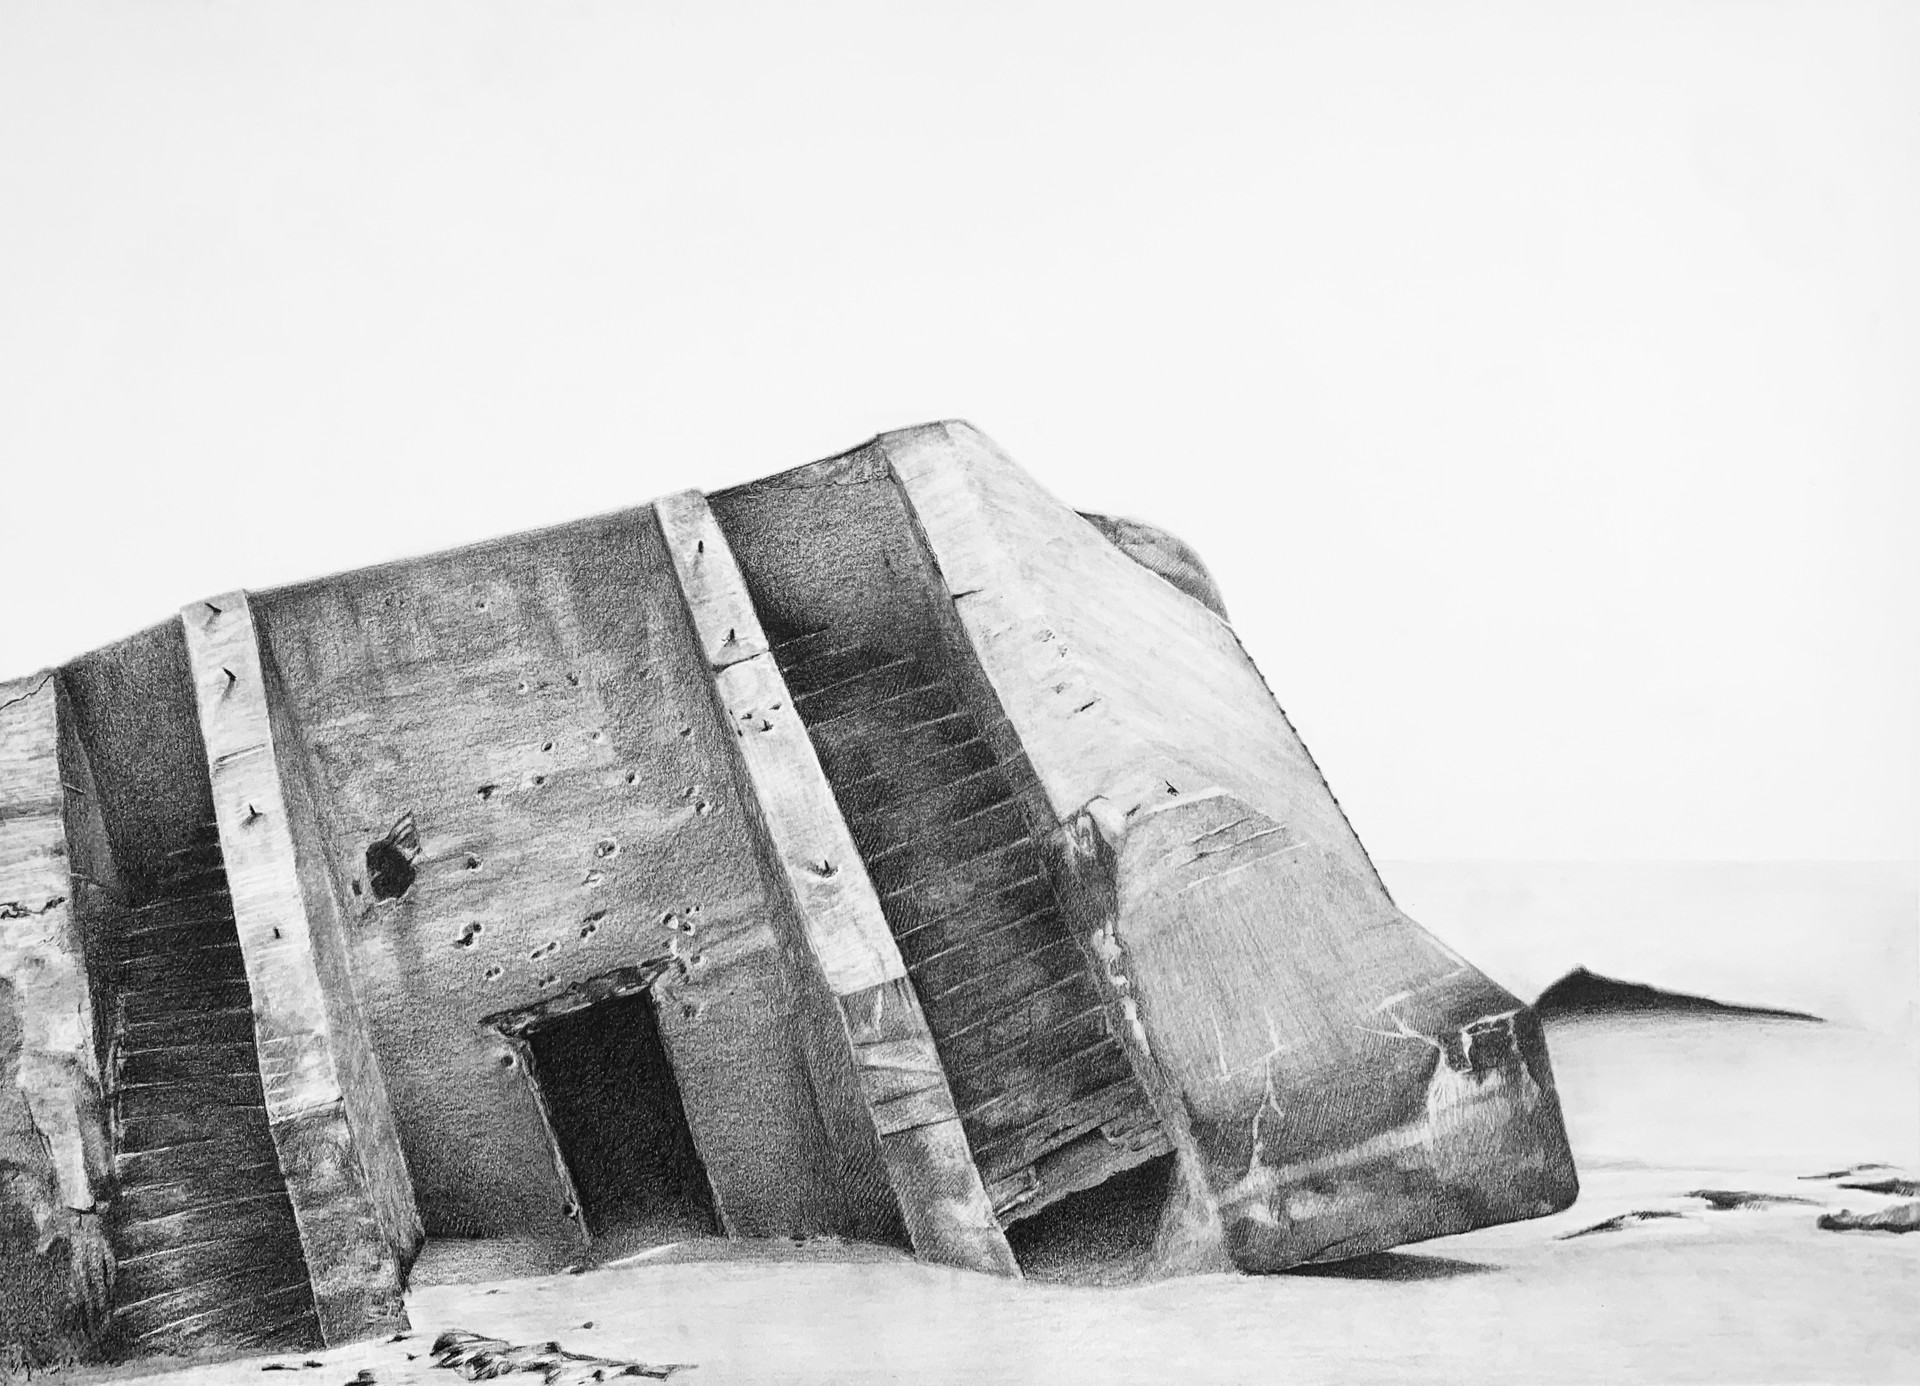 Atlantic Wall Bunker 03 by Garland Fielder